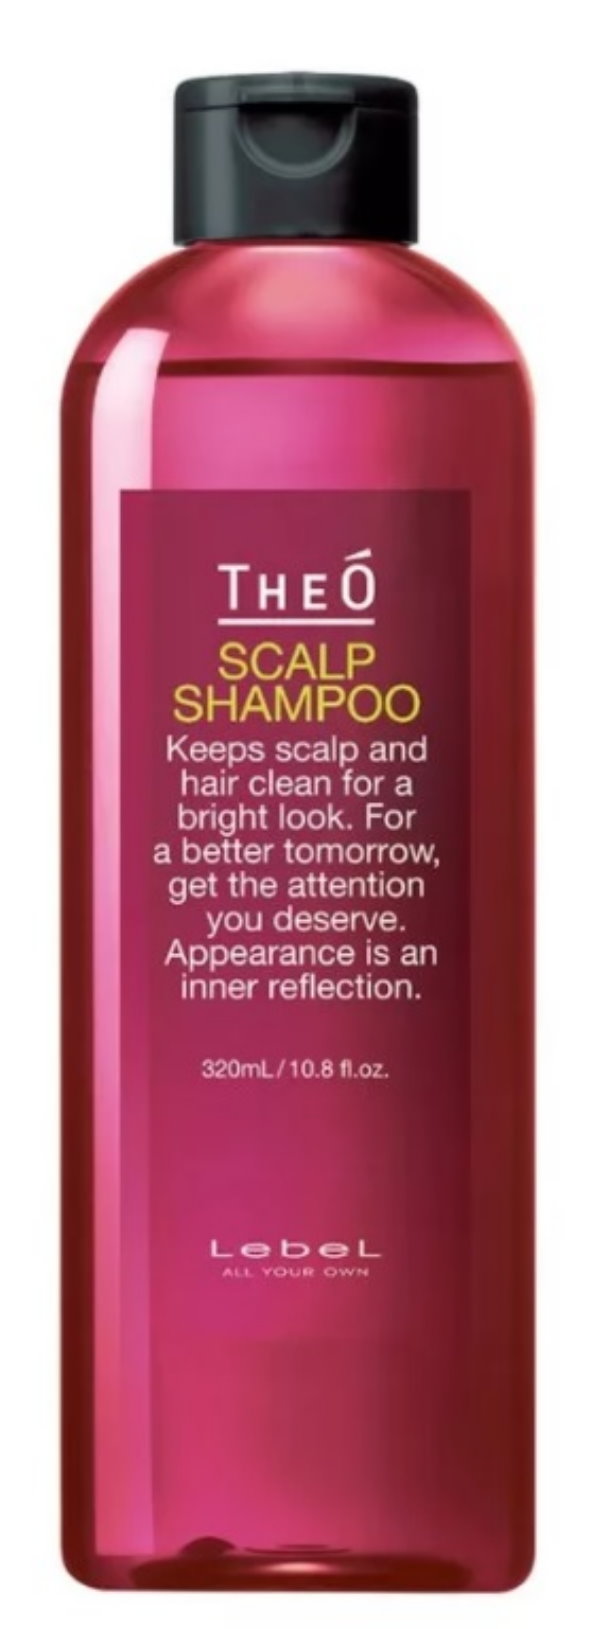 Шампунь многофункциональный Lebel TheO Scalp Shampoo, 320 мл шампунь многофункциональный можжевельник ginepro rosso свойства не назначены